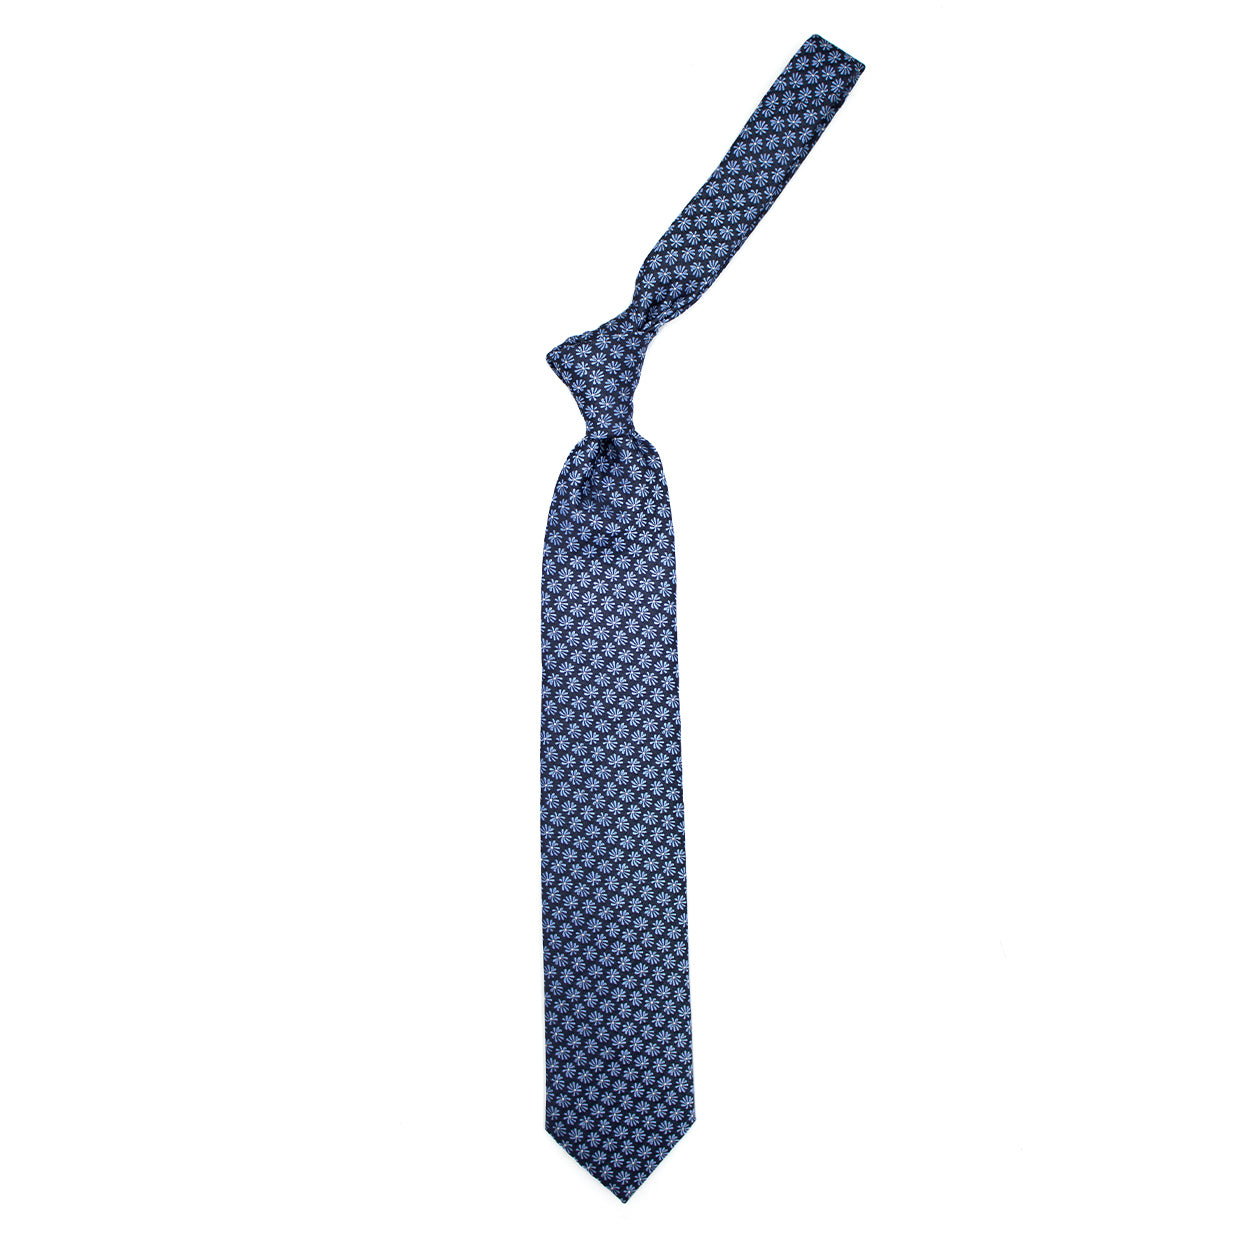 Cravatta blu con fiori azzurri e pallini bianchi